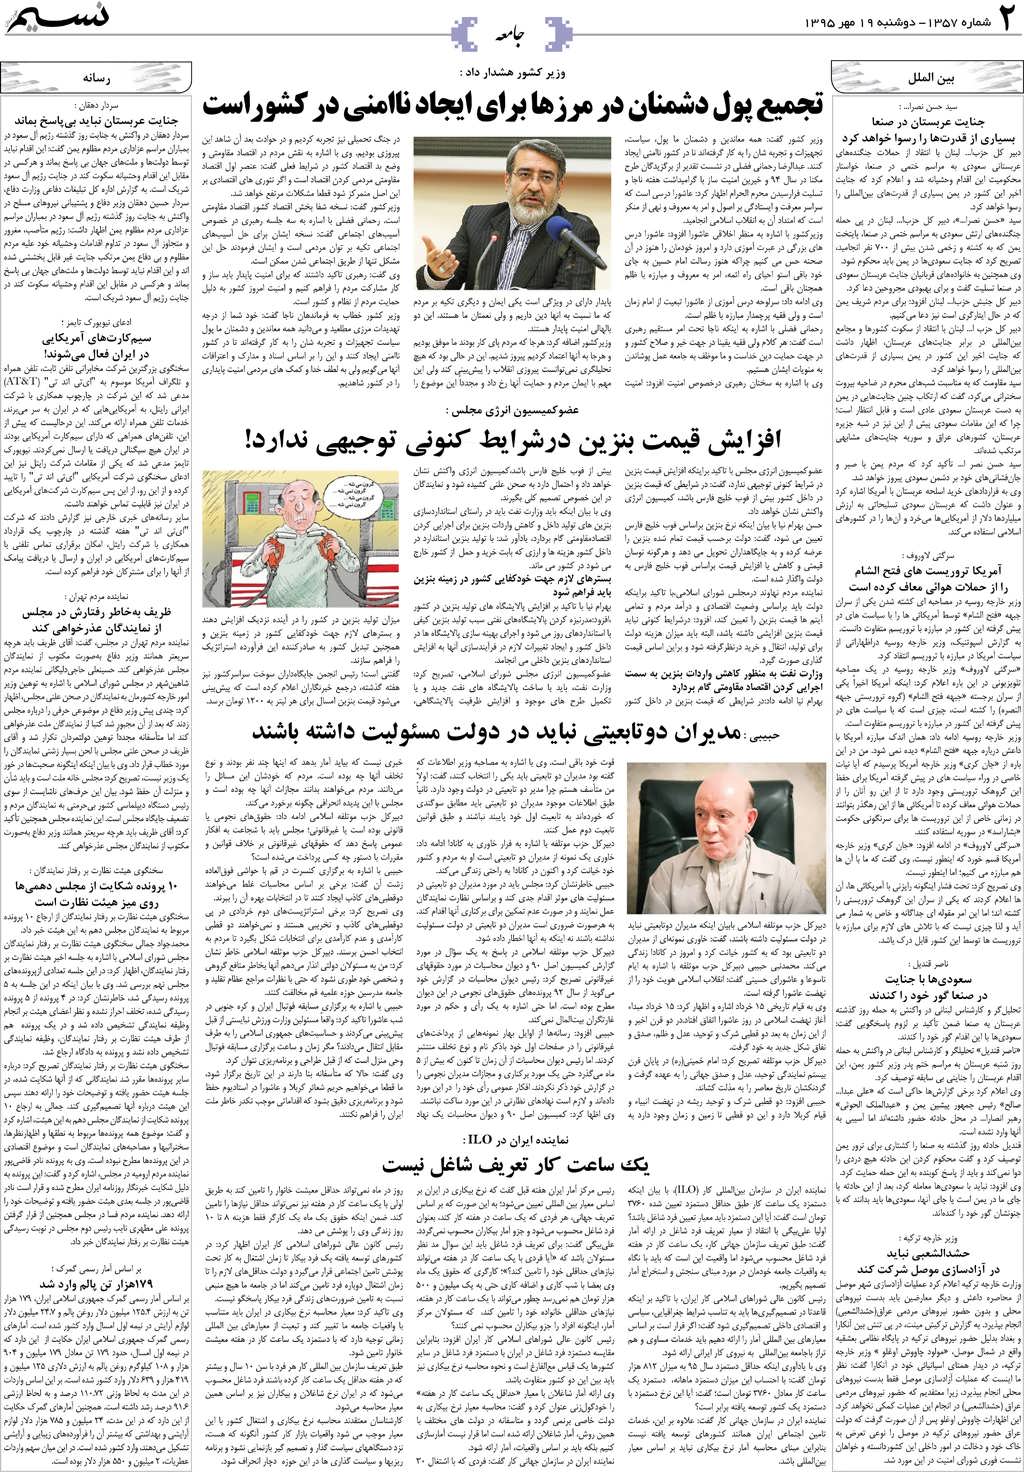 صفحه جامعه روزنامه نسیم شماره 1357